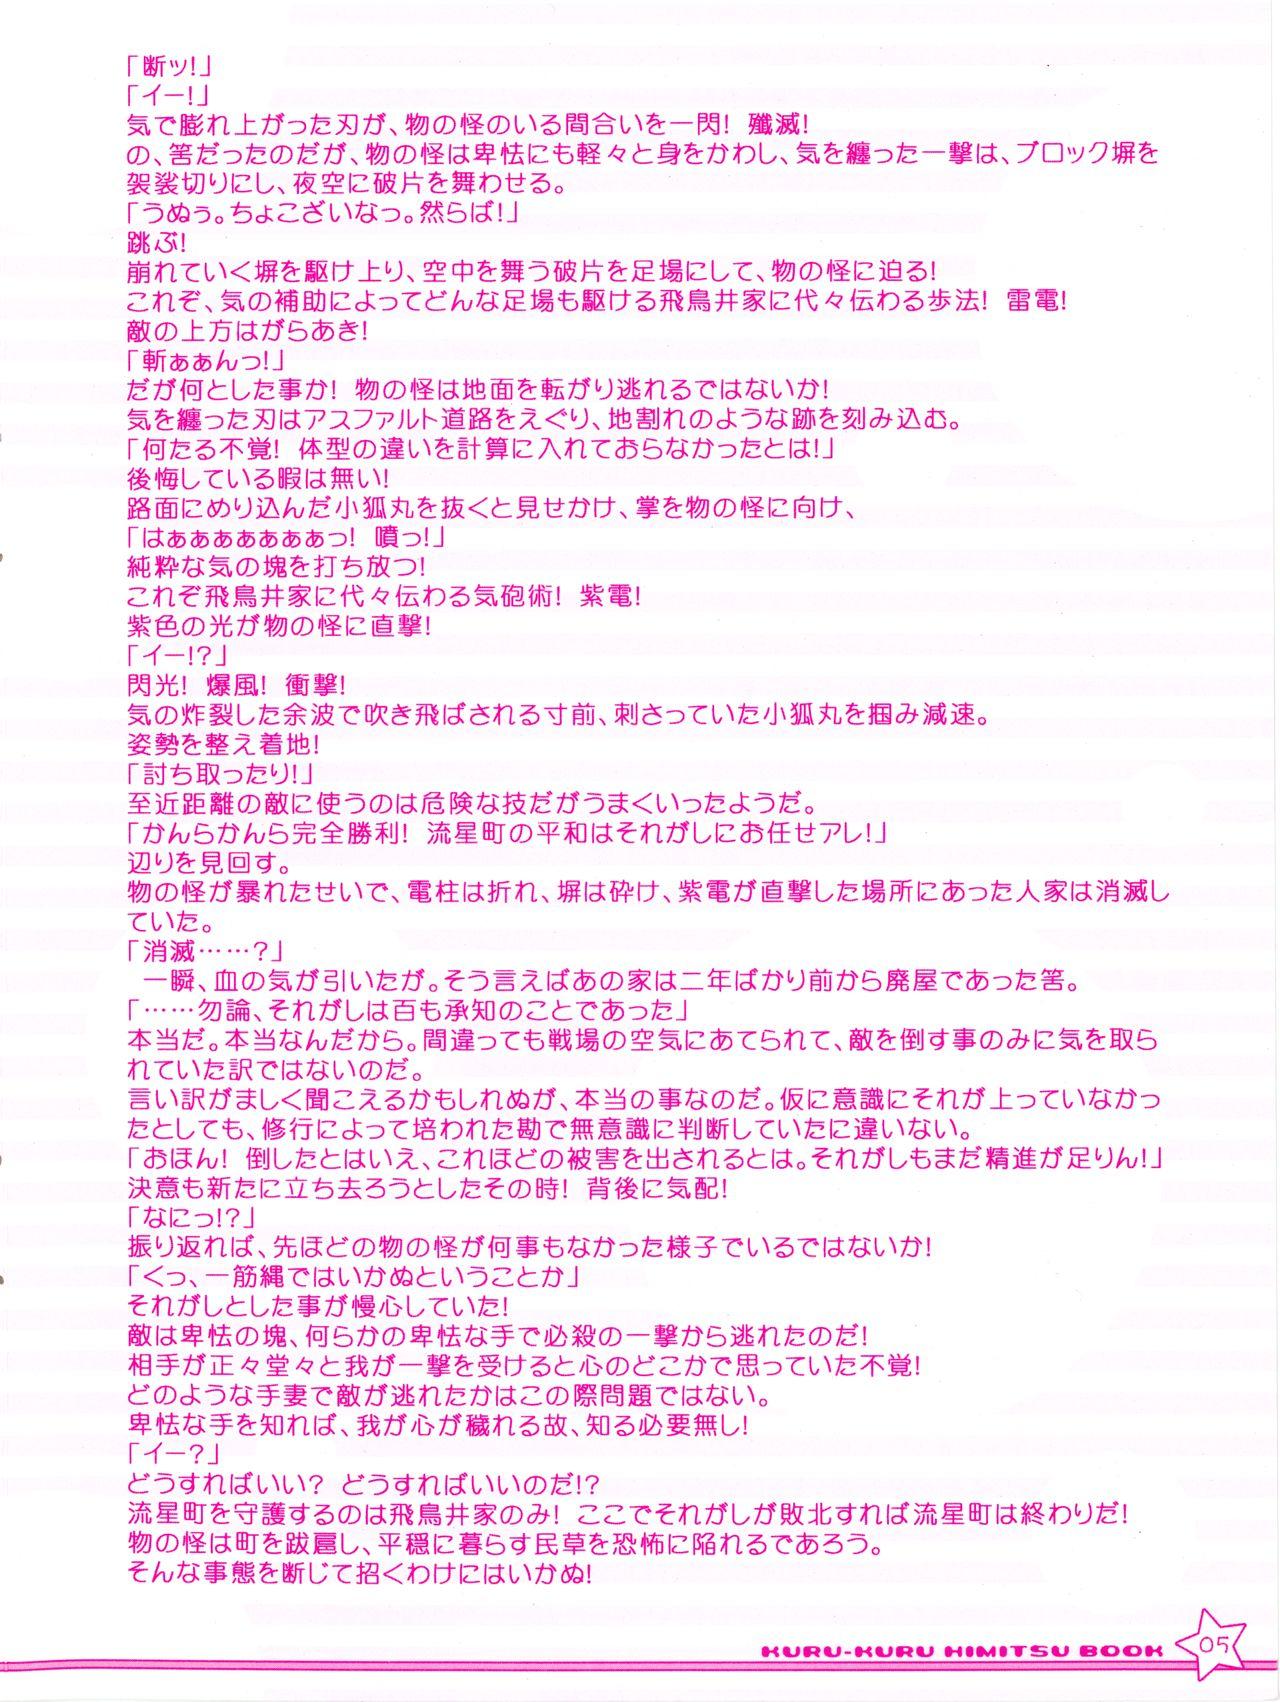 Gay Spank Twinkle☆Crusaders Kurukuru Most Secret Booklet - Twinkle crusaders Mofos - Page 5